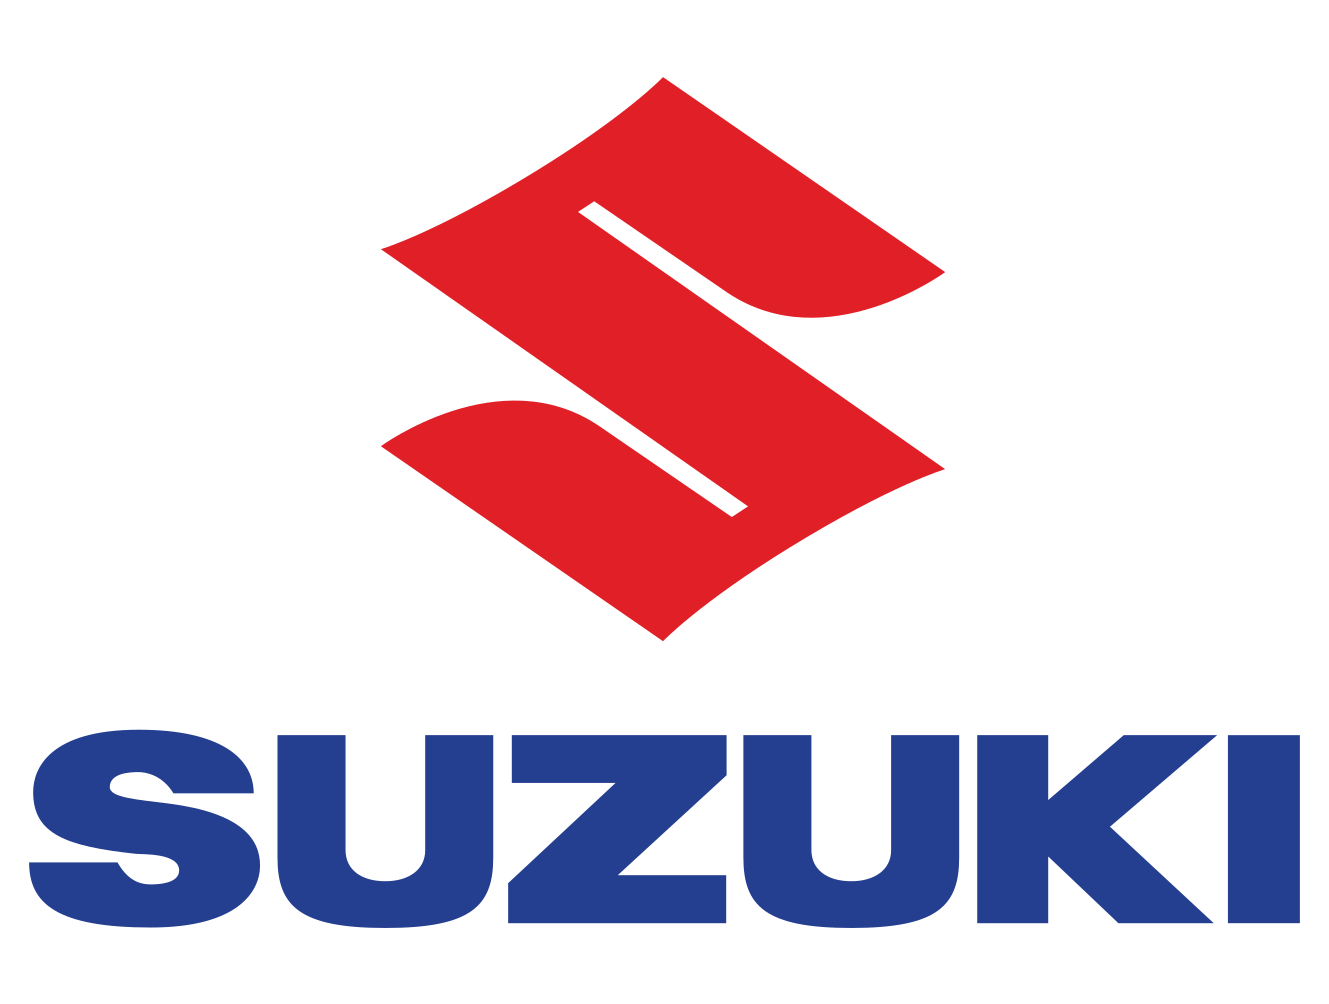 6 suzuki